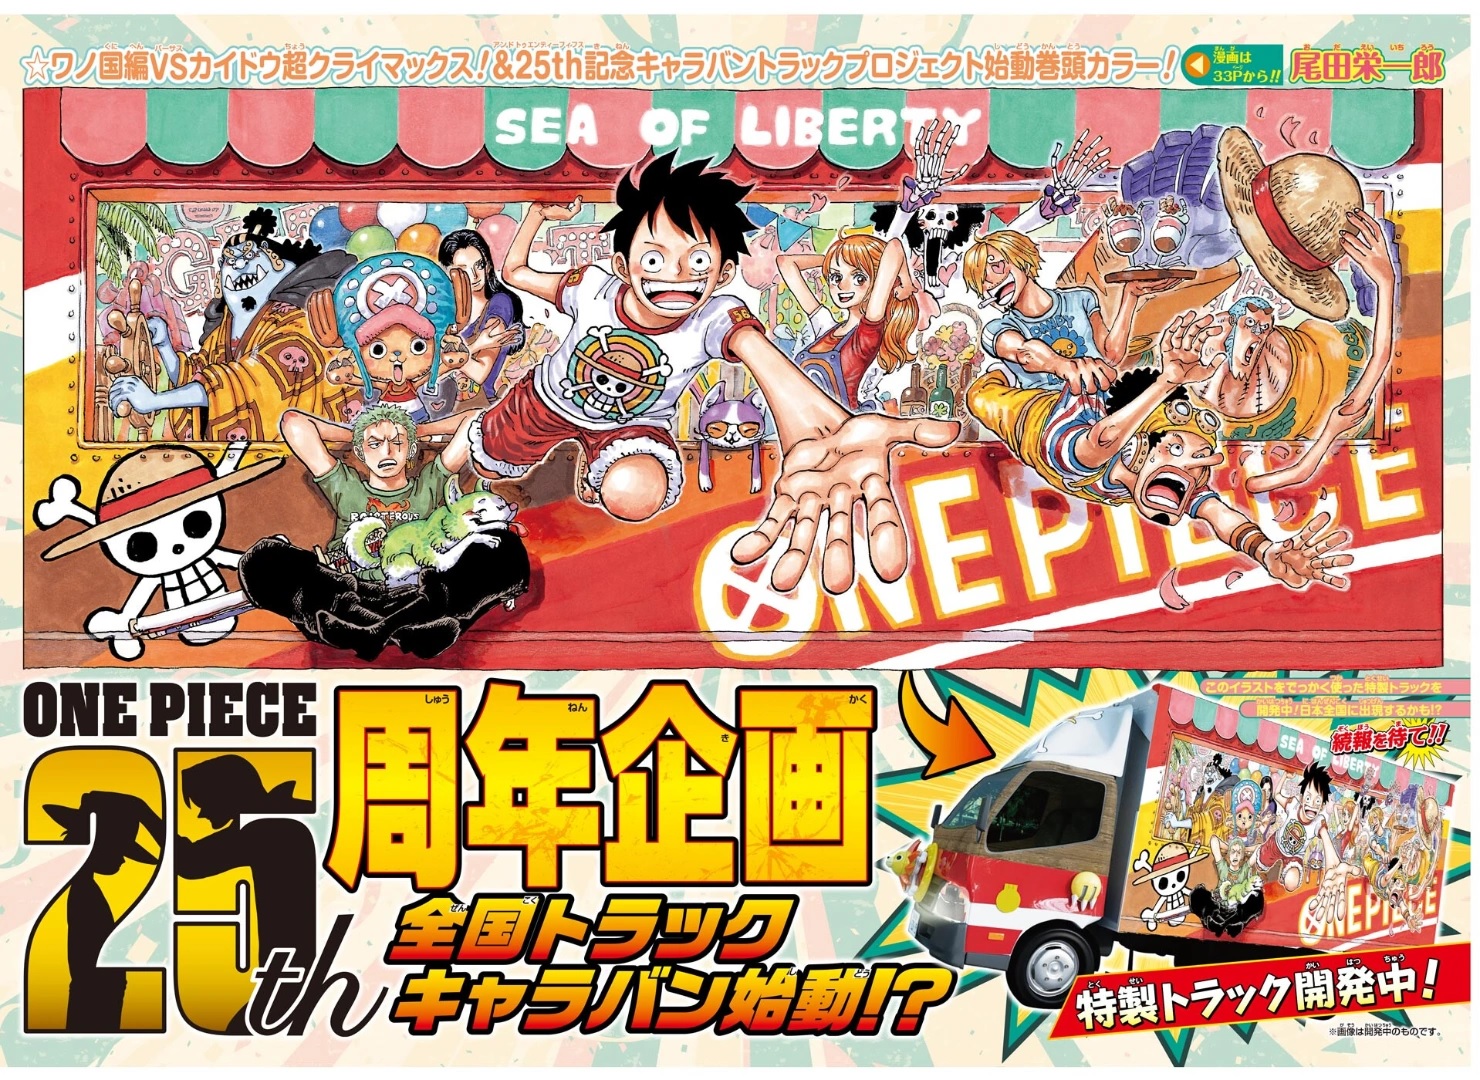 Confira o processo de ilustração para a capa colorida do capítulo 1045 de One Piece